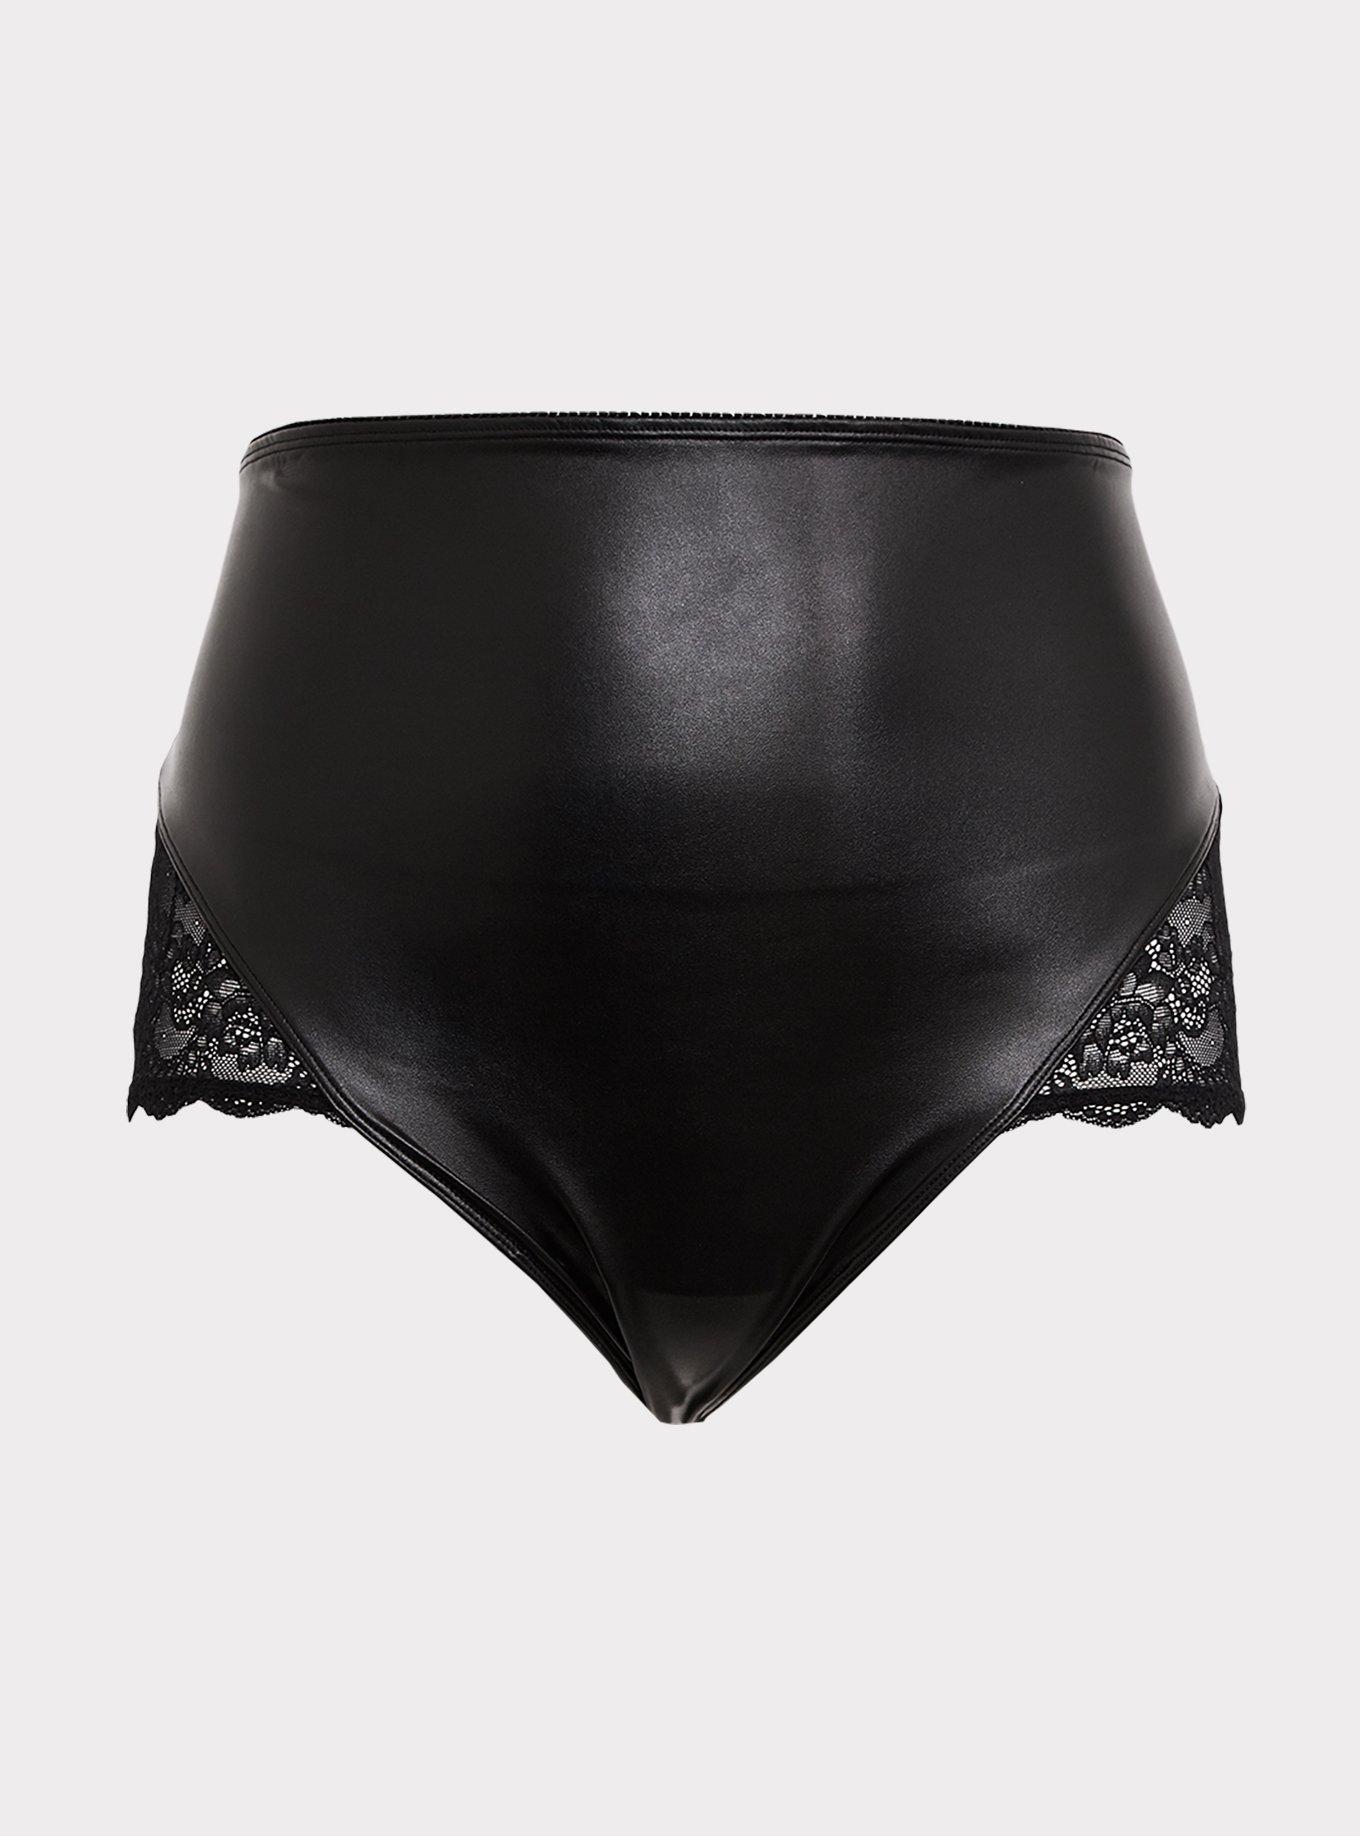 Plus Size - Black Faux Pleather & Lace Lace-Up High Waist Panty - Torrid